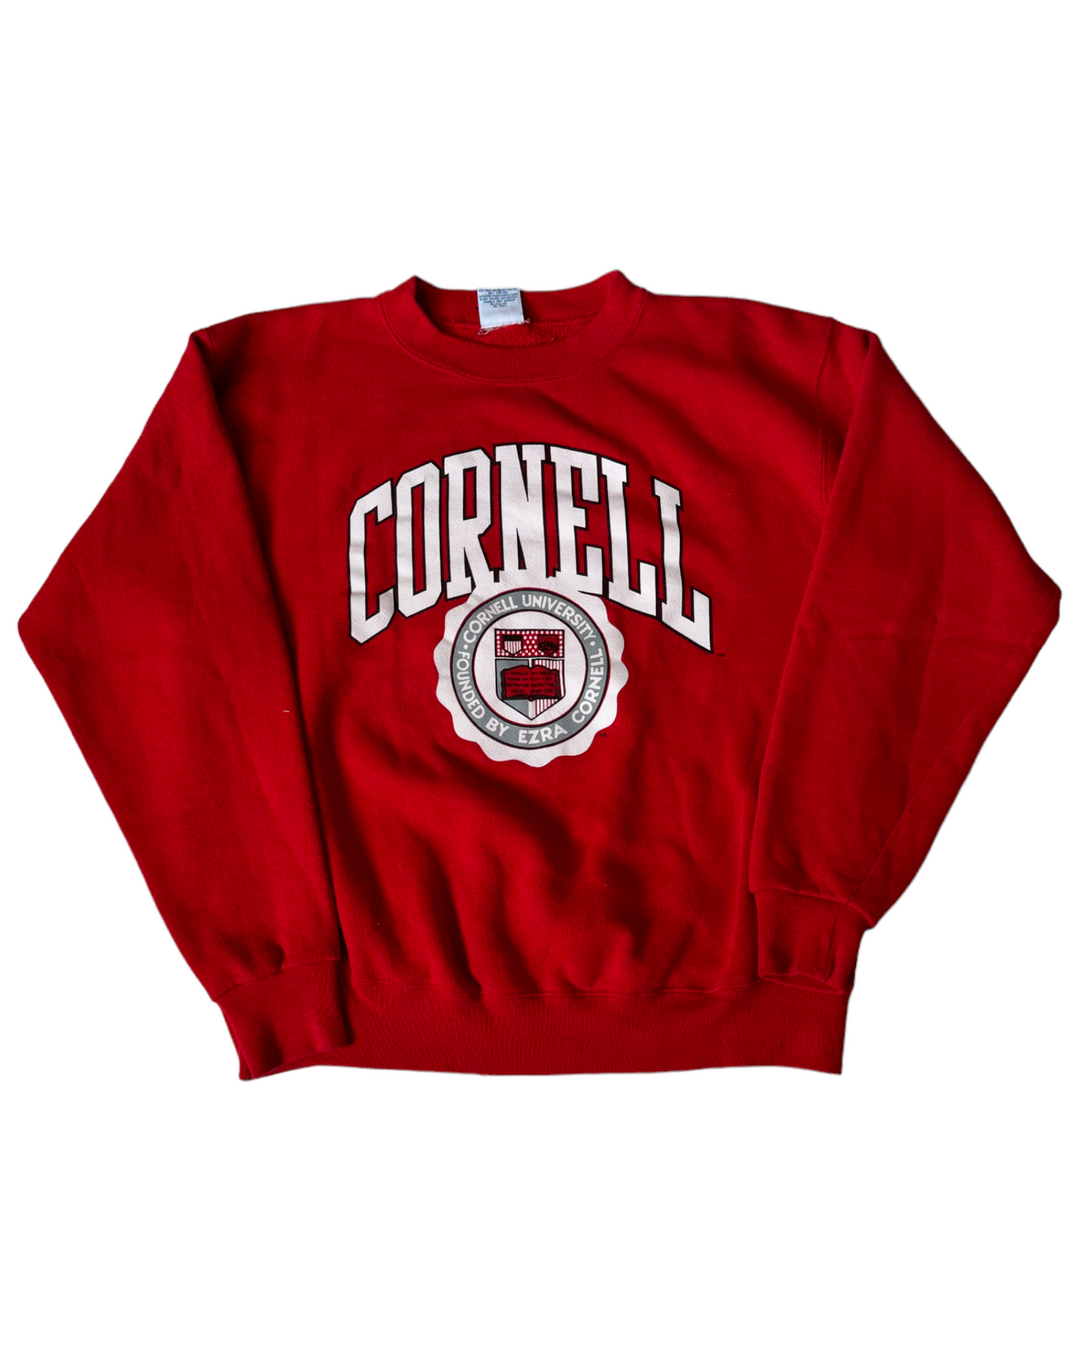 Cornell Vintage Sweatshirt